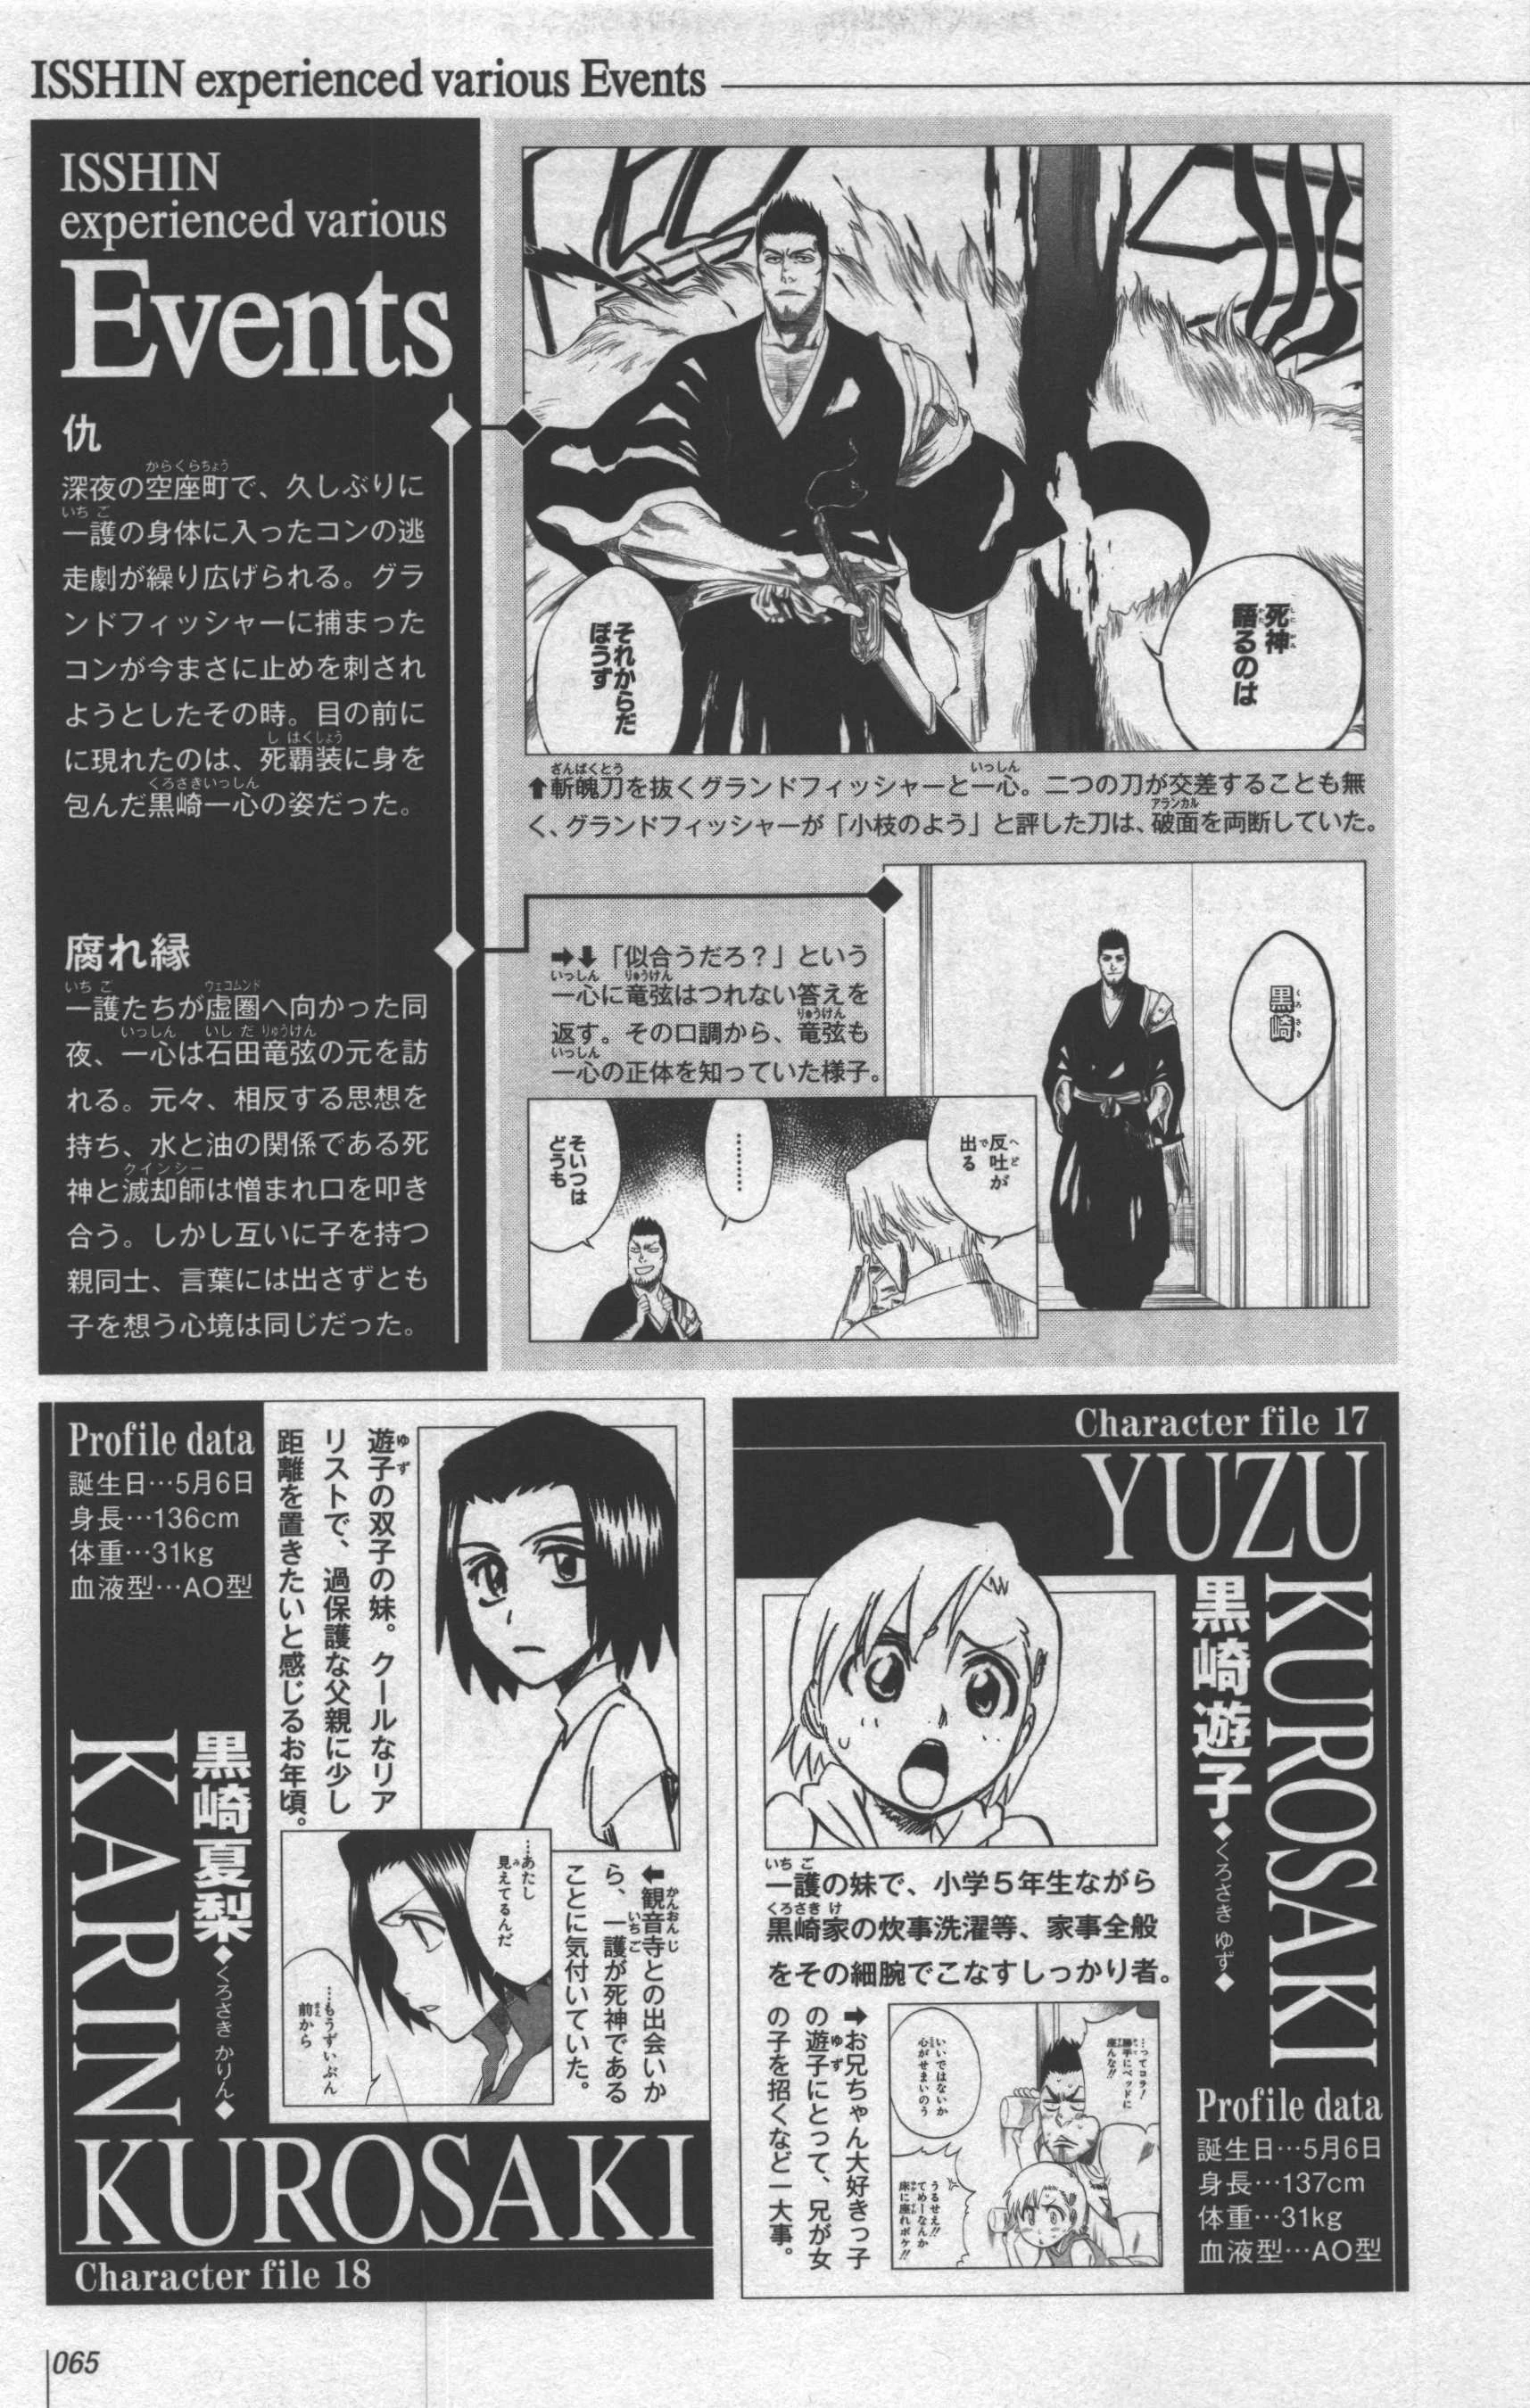 Talk Karin Kurosaki Archive 1 Bleach Wiki Fandom